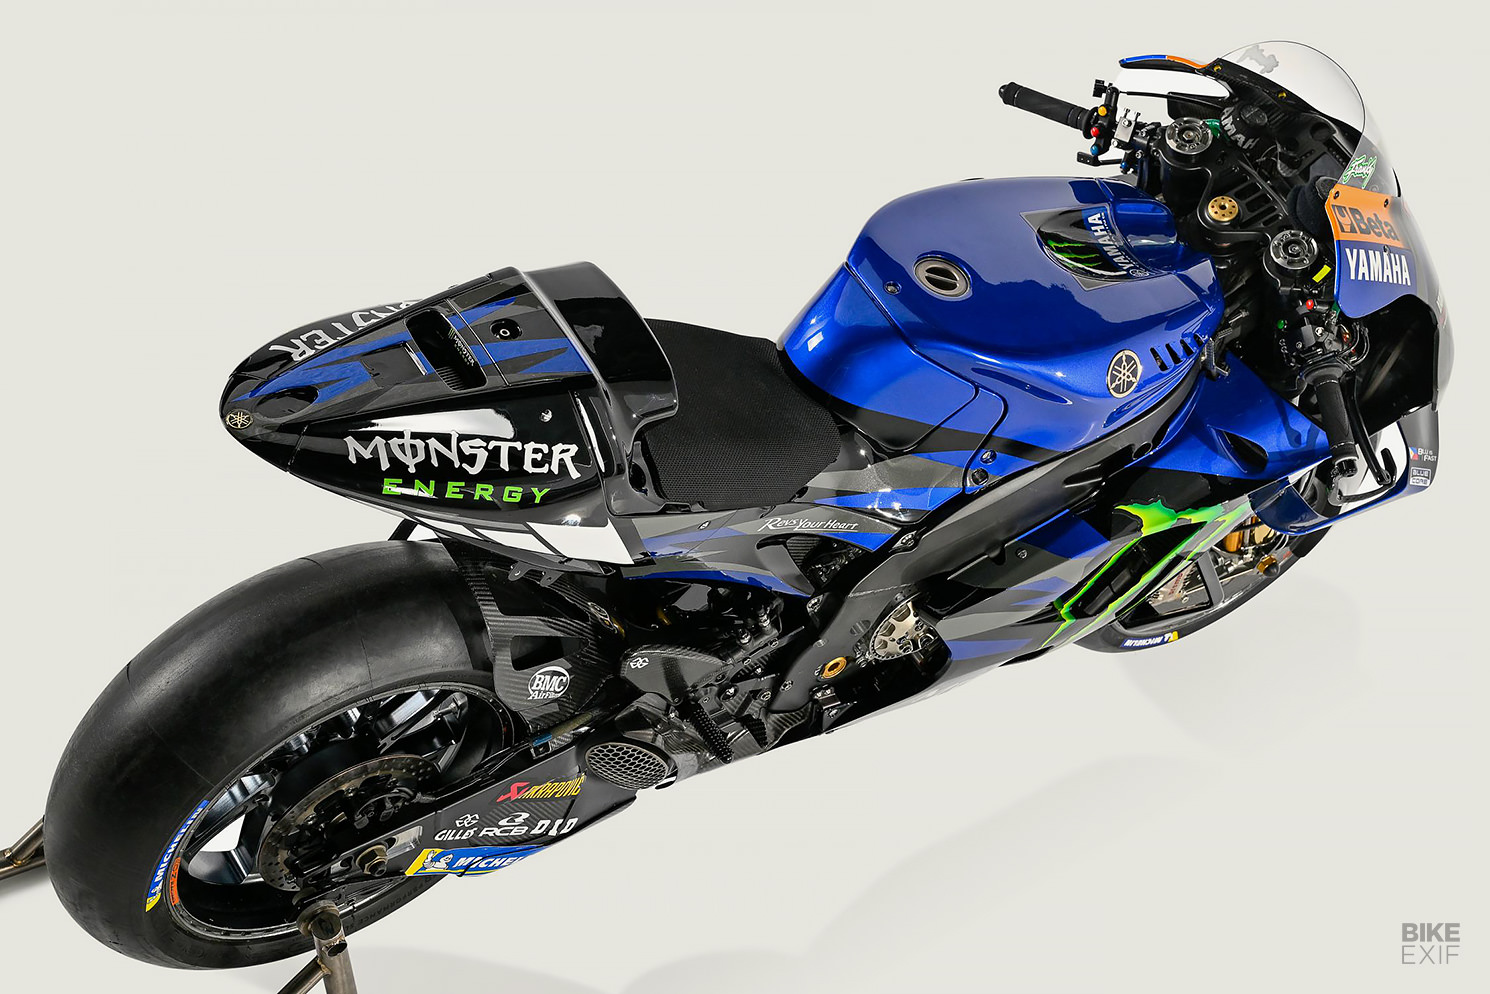 Yamaha Factory Racing MotoGP racing bike